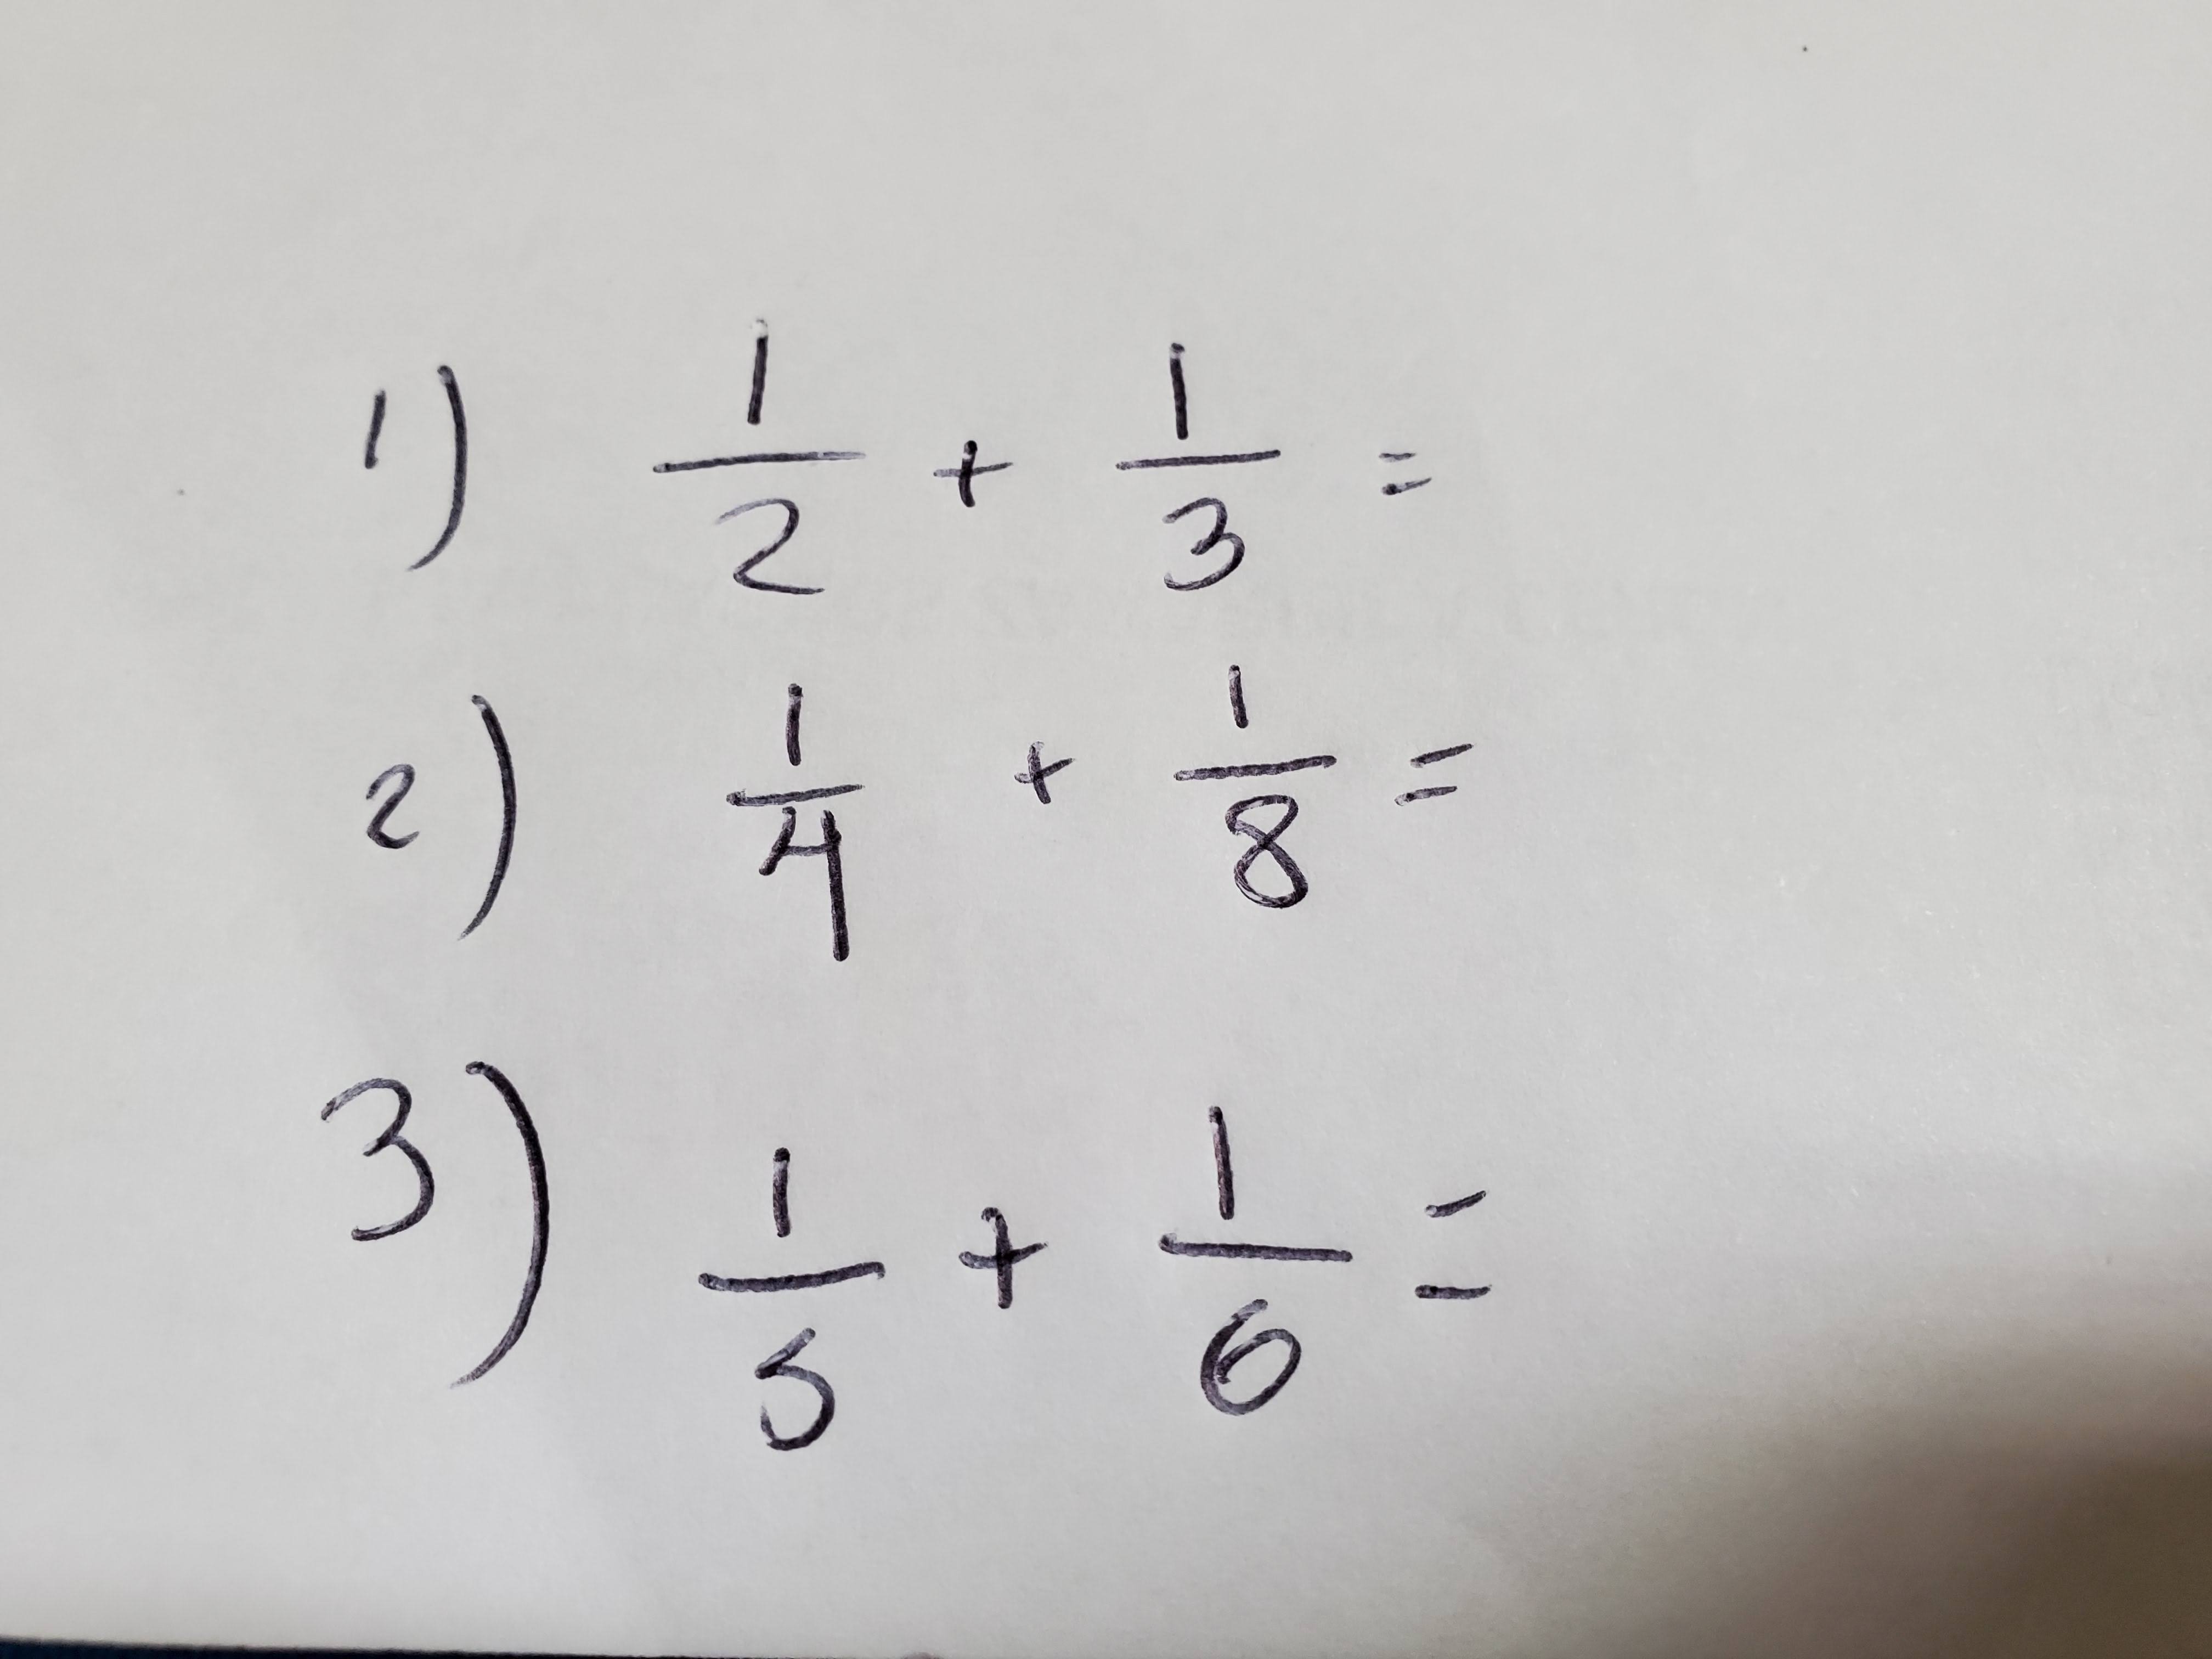 Quiz de Matemática básica PART.4 #quiz #perguntas